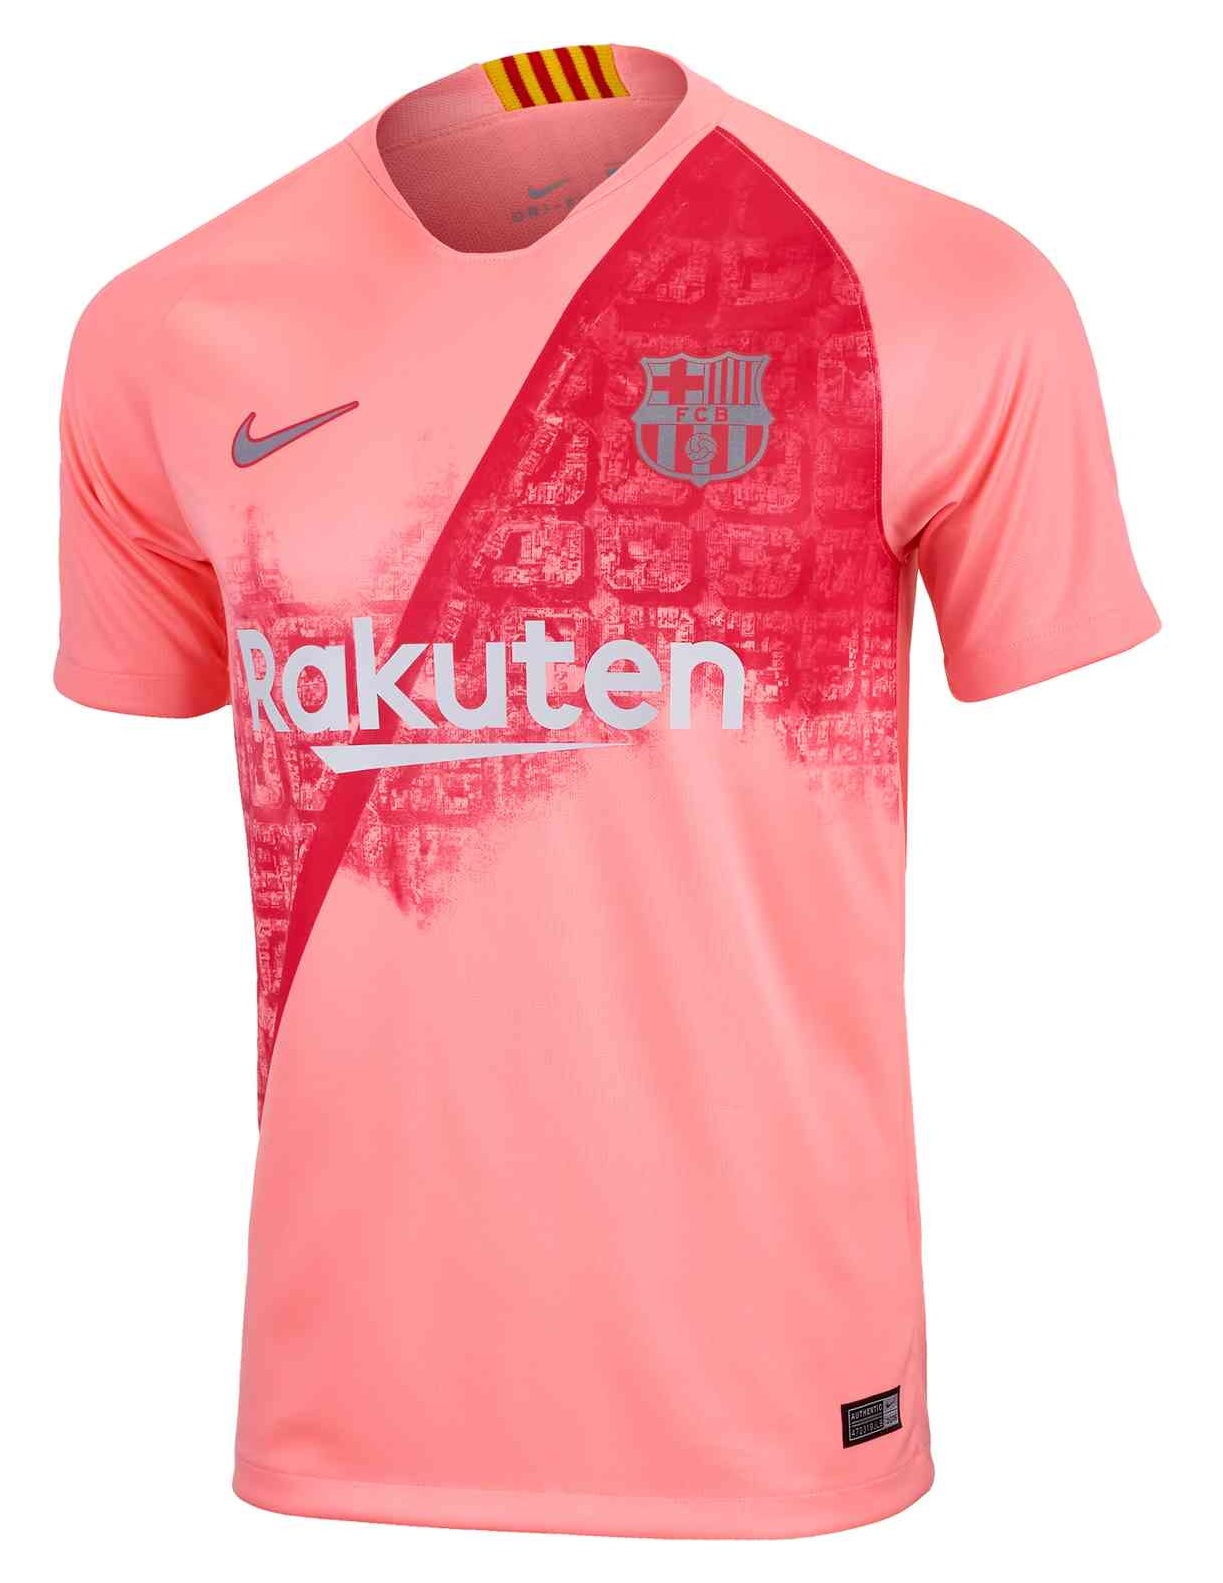 Industrialiseren semester Slank FC Barcelona third kit 2018 - FC Barcelona 3rd kit 18/19 - UCL